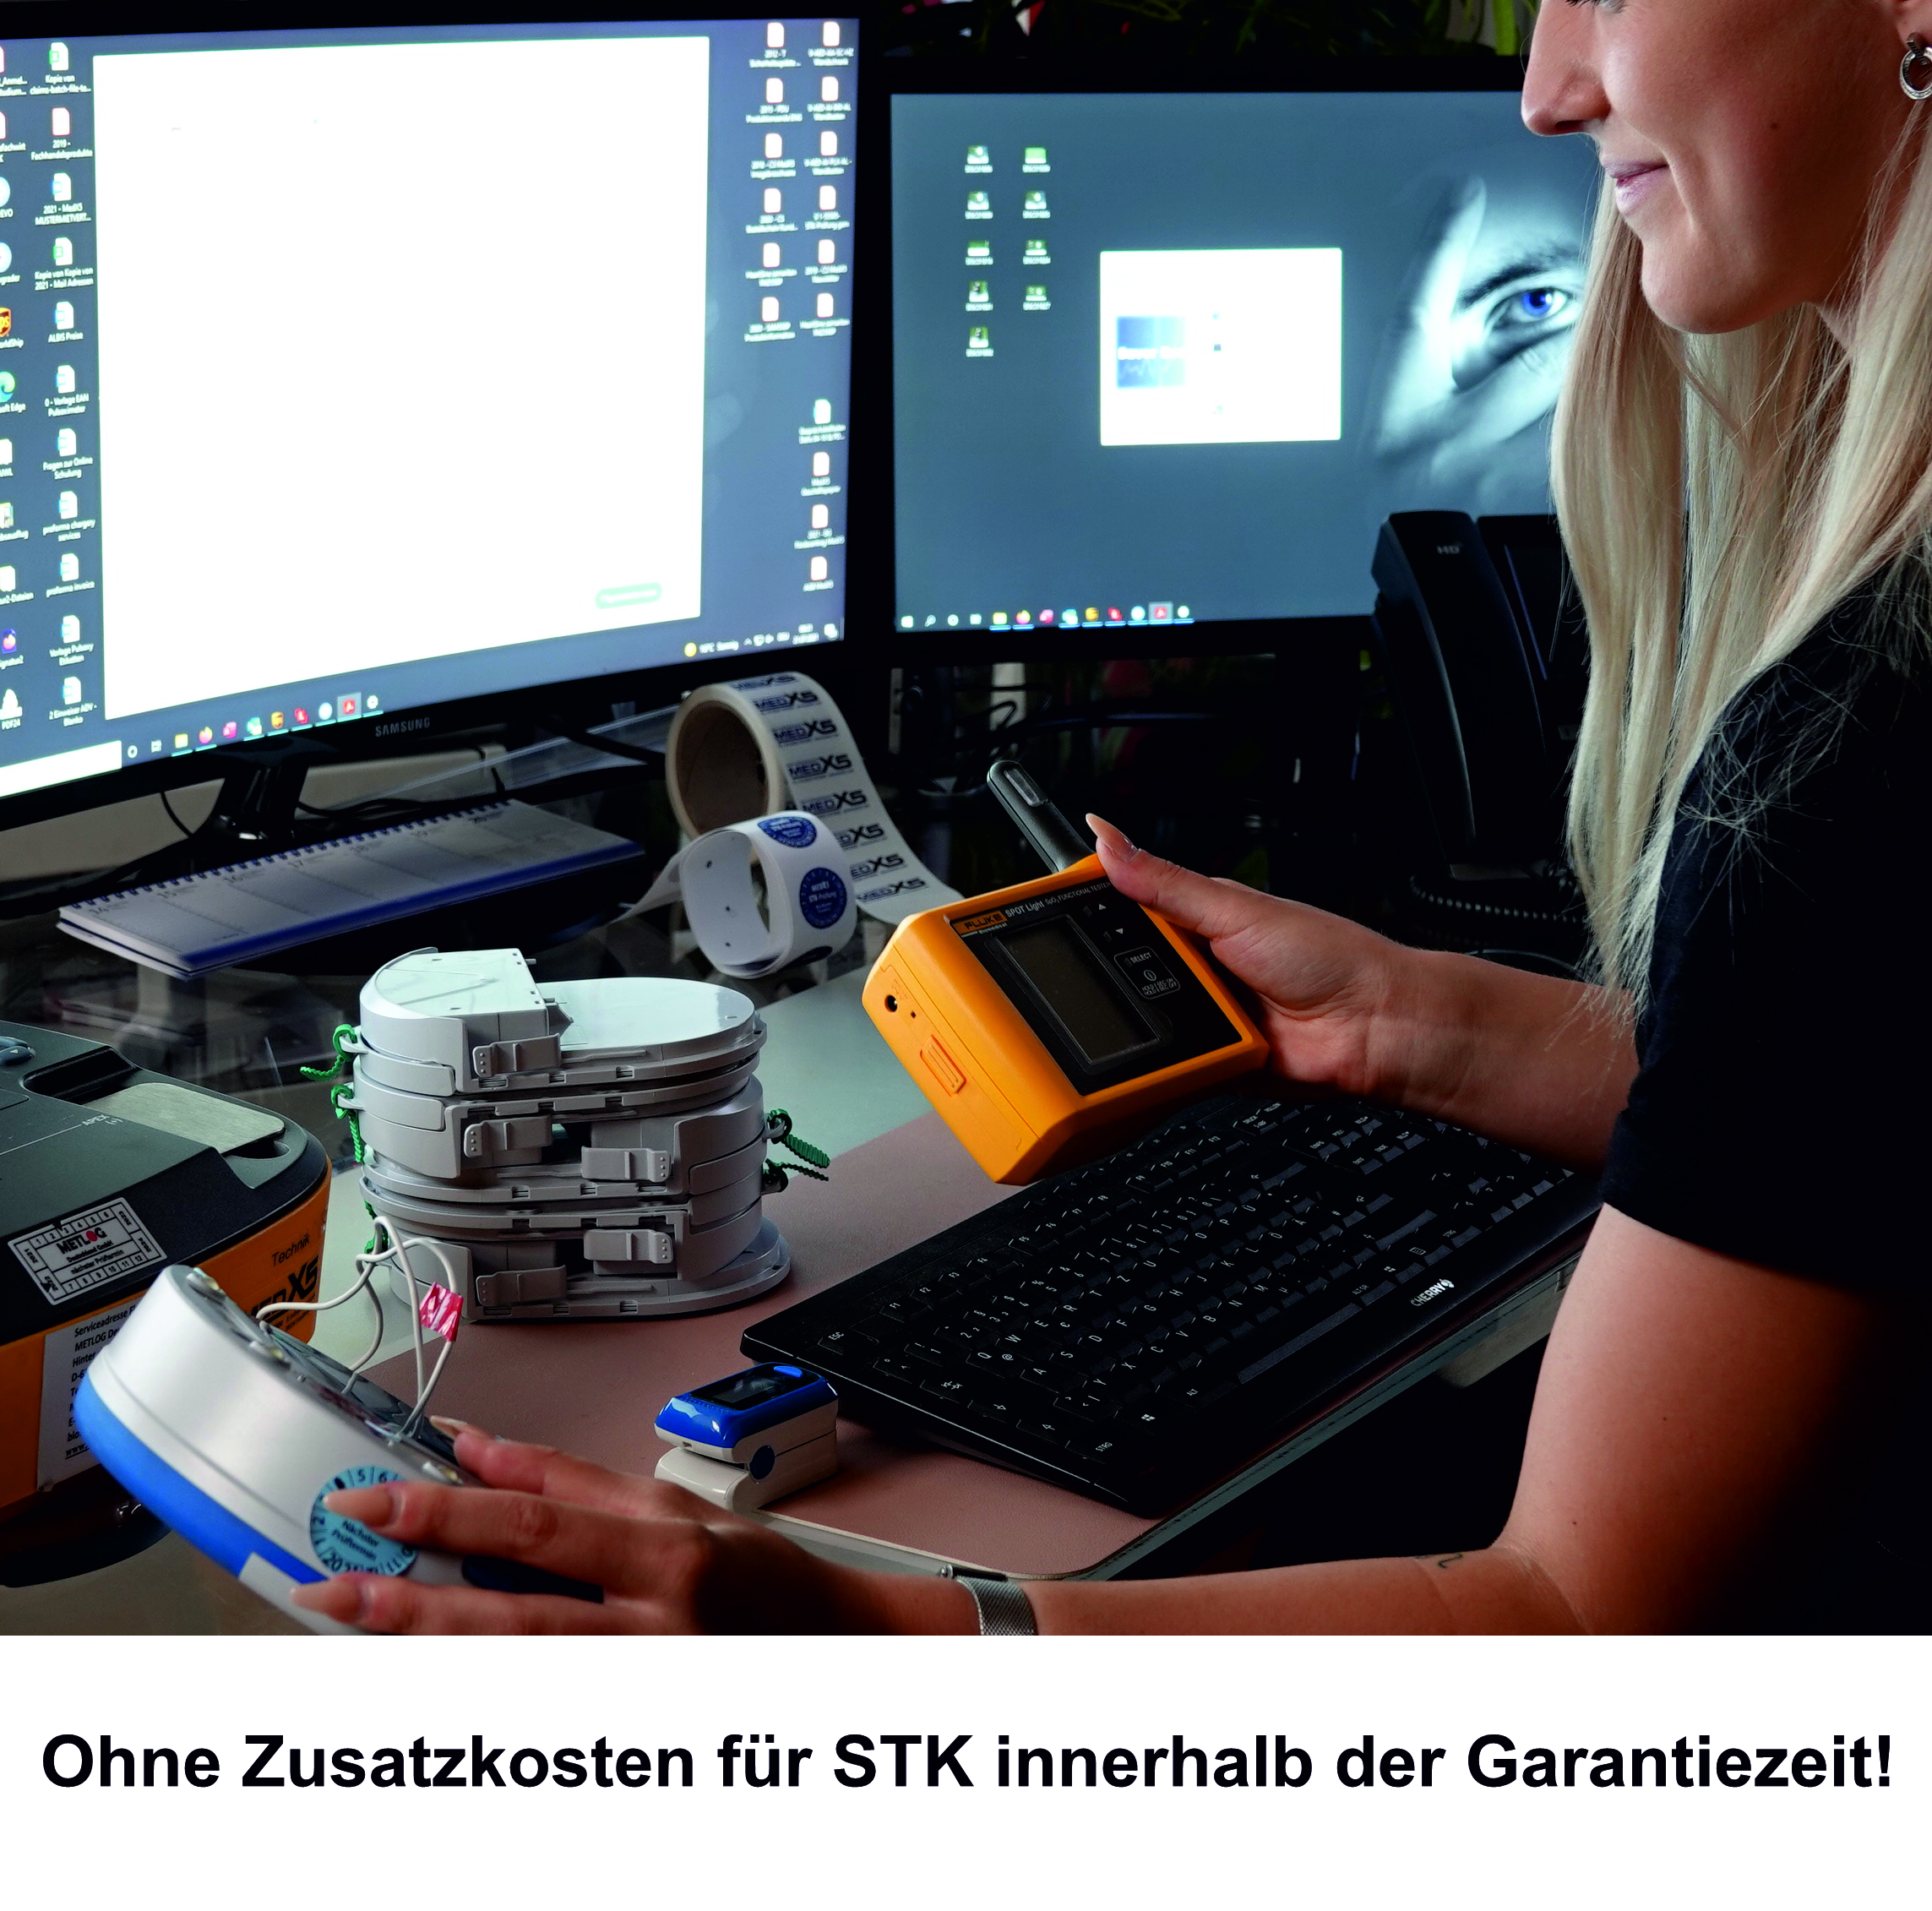 HeartSine samaritan® PAD 350P Defibrillator/AED, inkl. 3 St. STK-Prüfungen und 1 St. PAD-PAK innerhalb der Garantiezeit